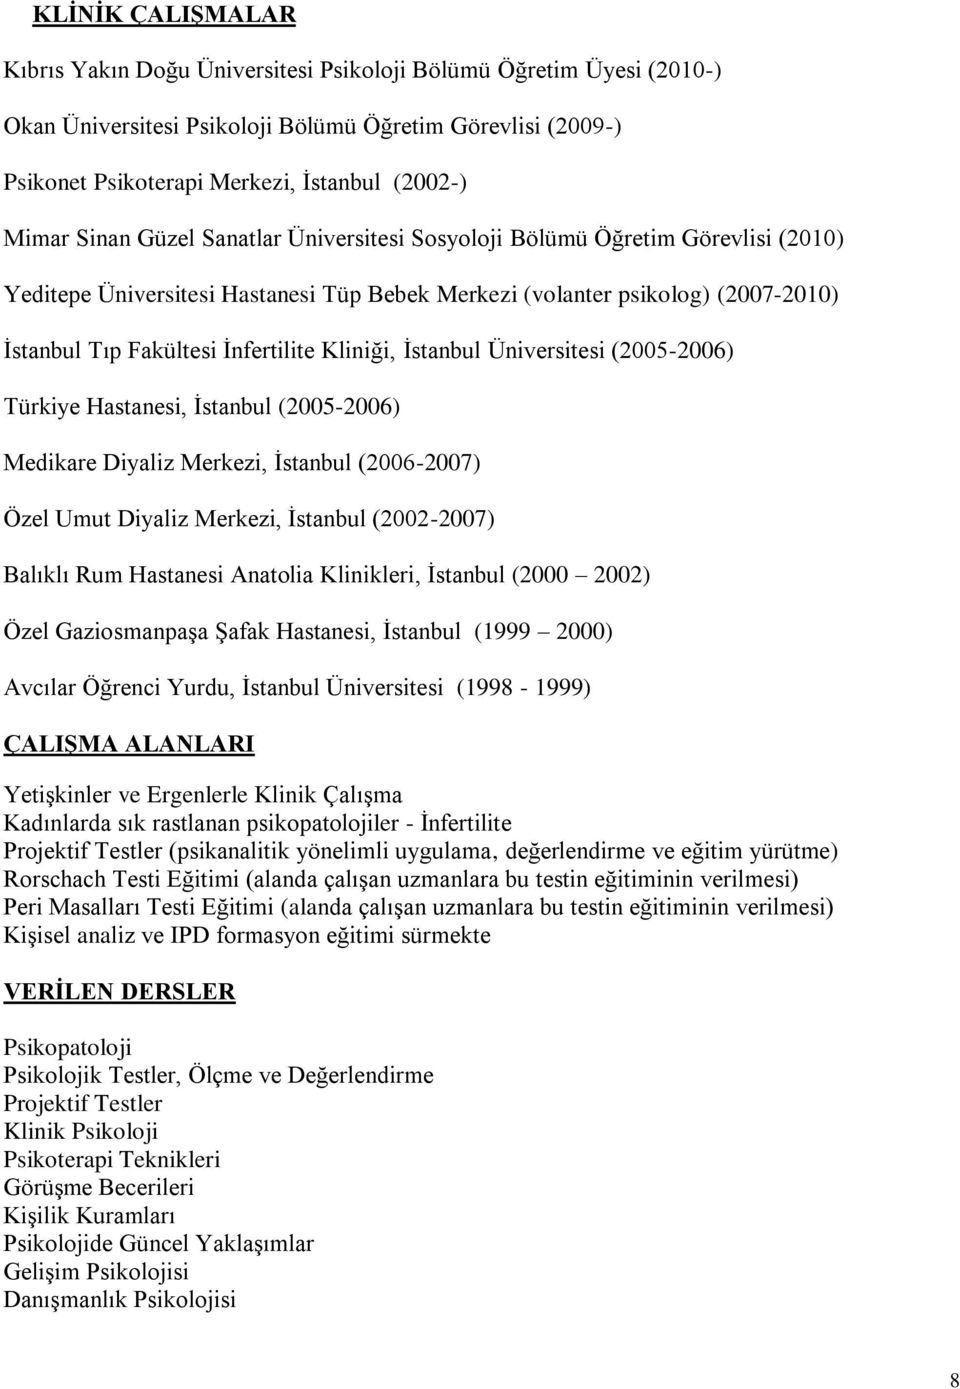 Kliniği, İstanbul Üniversitesi (2005-2006) Türkiye Hastanesi, İstanbul (2005-2006) Medikare Diyaliz Merkezi, İstanbul (2006-2007) Özel Umut Diyaliz Merkezi, İstanbul (2002-2007) Balıklı Rum Hastanesi